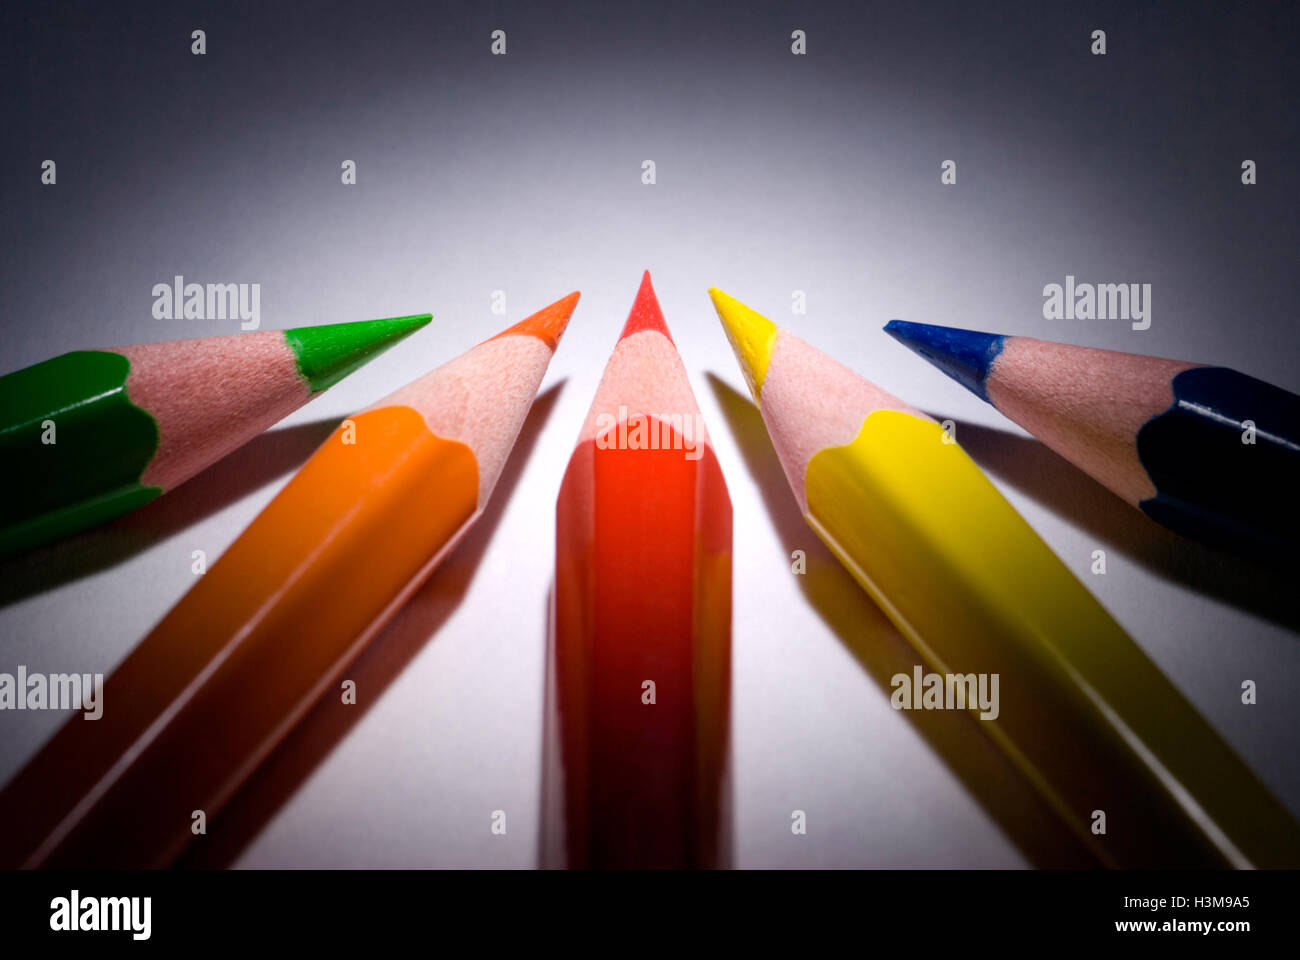 Fünf Bleistifte (dunkelblau, grün, rot, gelb, Orange) auf einem dunklen Hintergrund.  Verfügbar in hoher Auflösung und verschiedenen Größen. Stockfoto